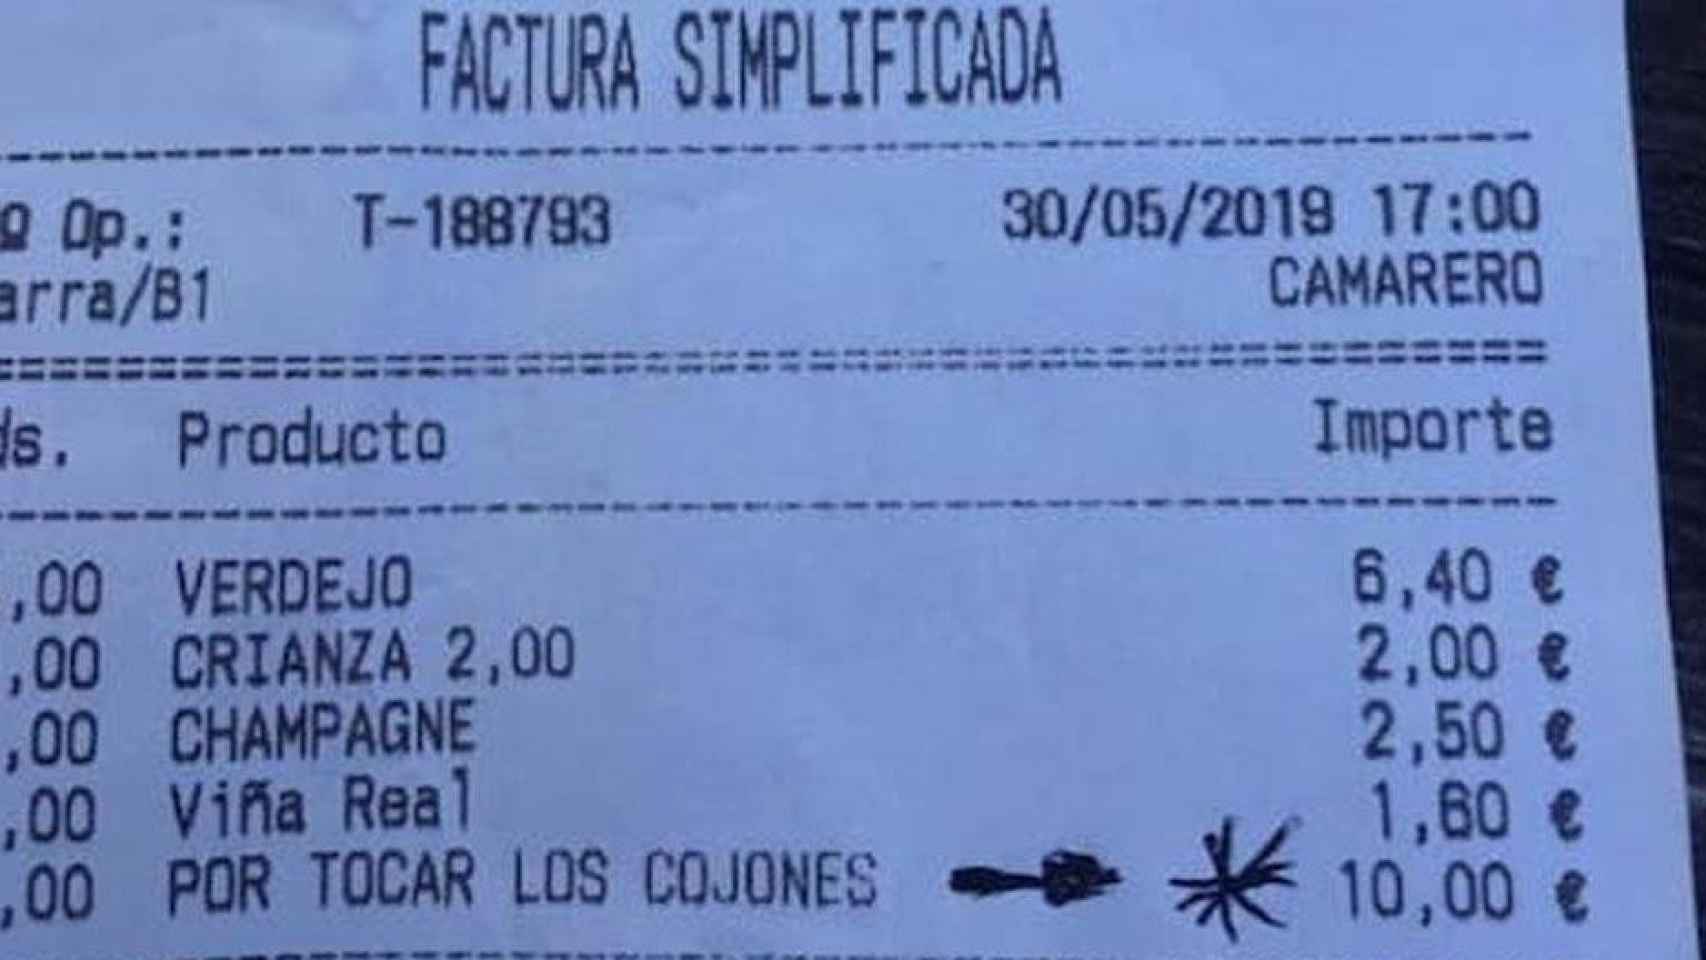 La factura del bar que cobra 10 euros por tocar los cojones / TWITTER